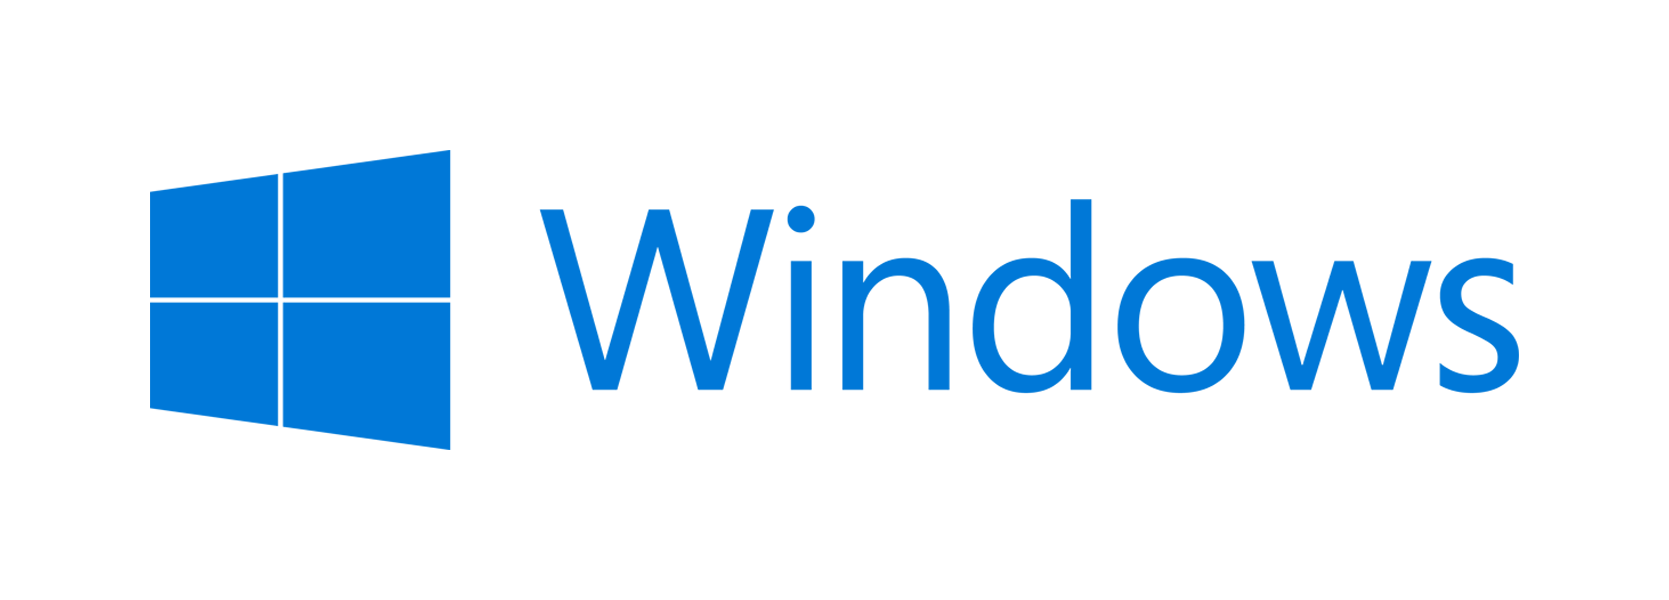 Software - Windows 8.1 - HD Wallpaper 